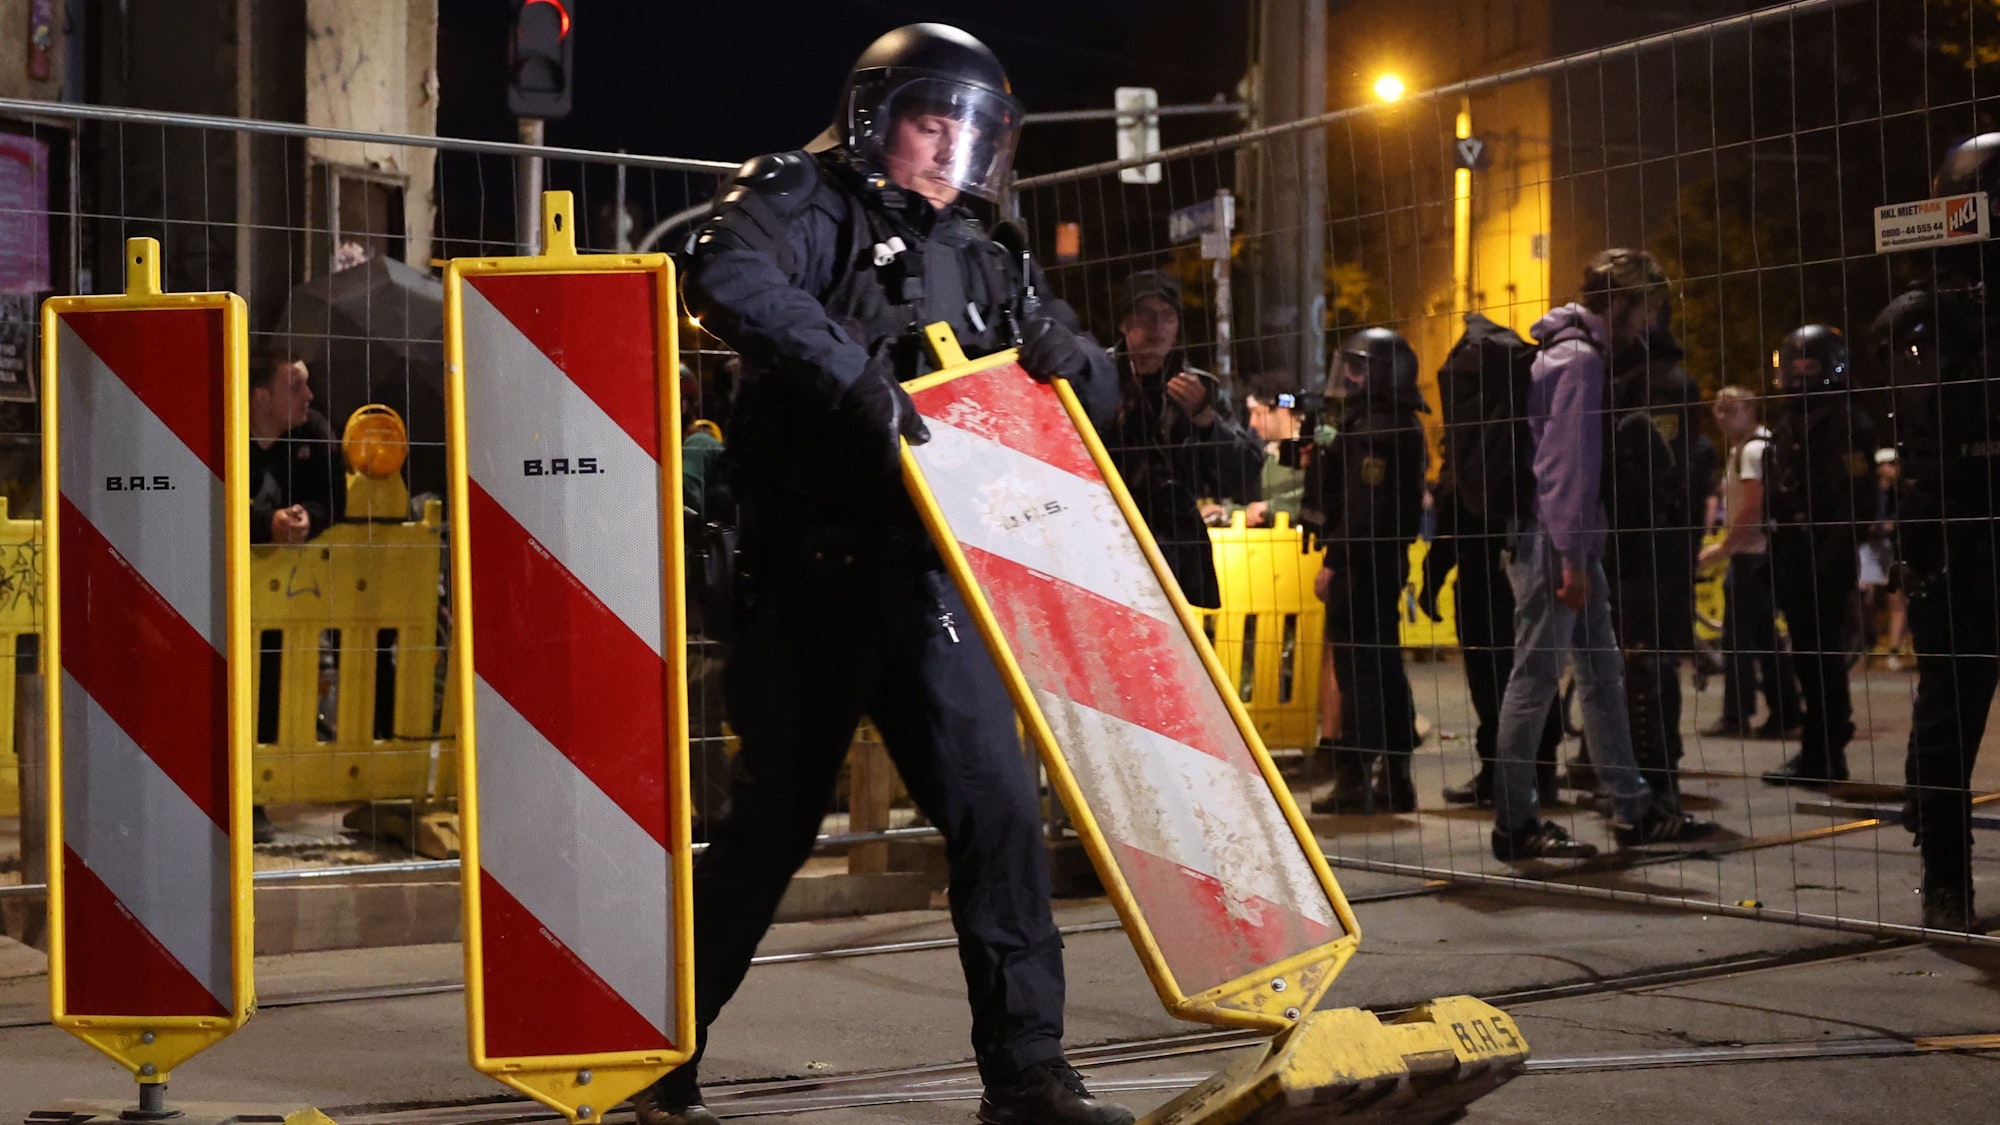 Proteste in Leipzig: Ein Polizist steht an Absperrungen. Bei der Demo am Samstagabend hat ein Pizza-Lieferant offenbar Barrikaden geräumt. (Symbolbild)